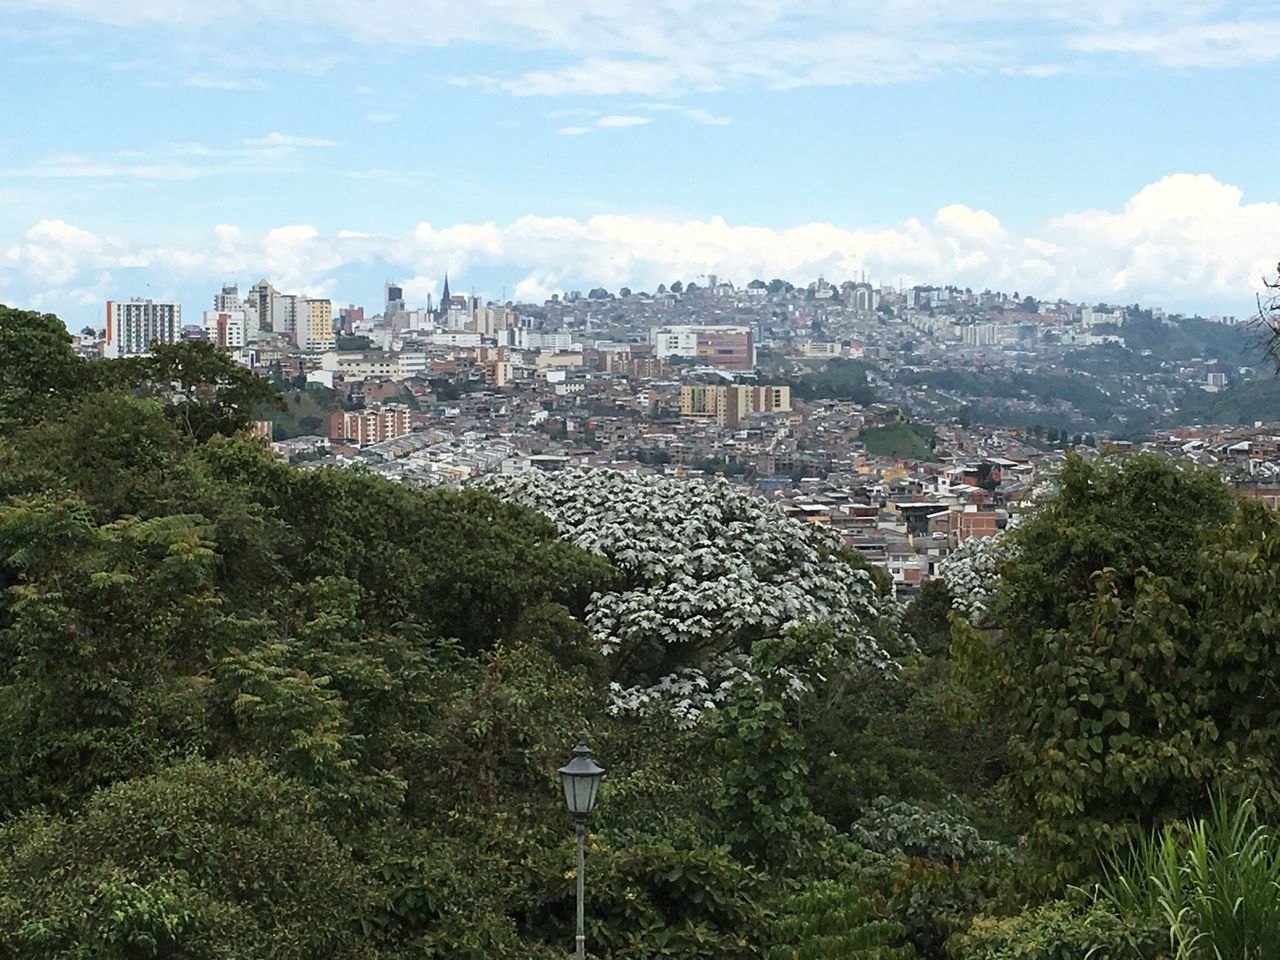 Découvrez le bijou caché de la Colombie : le parc écologique Los Yarumos.